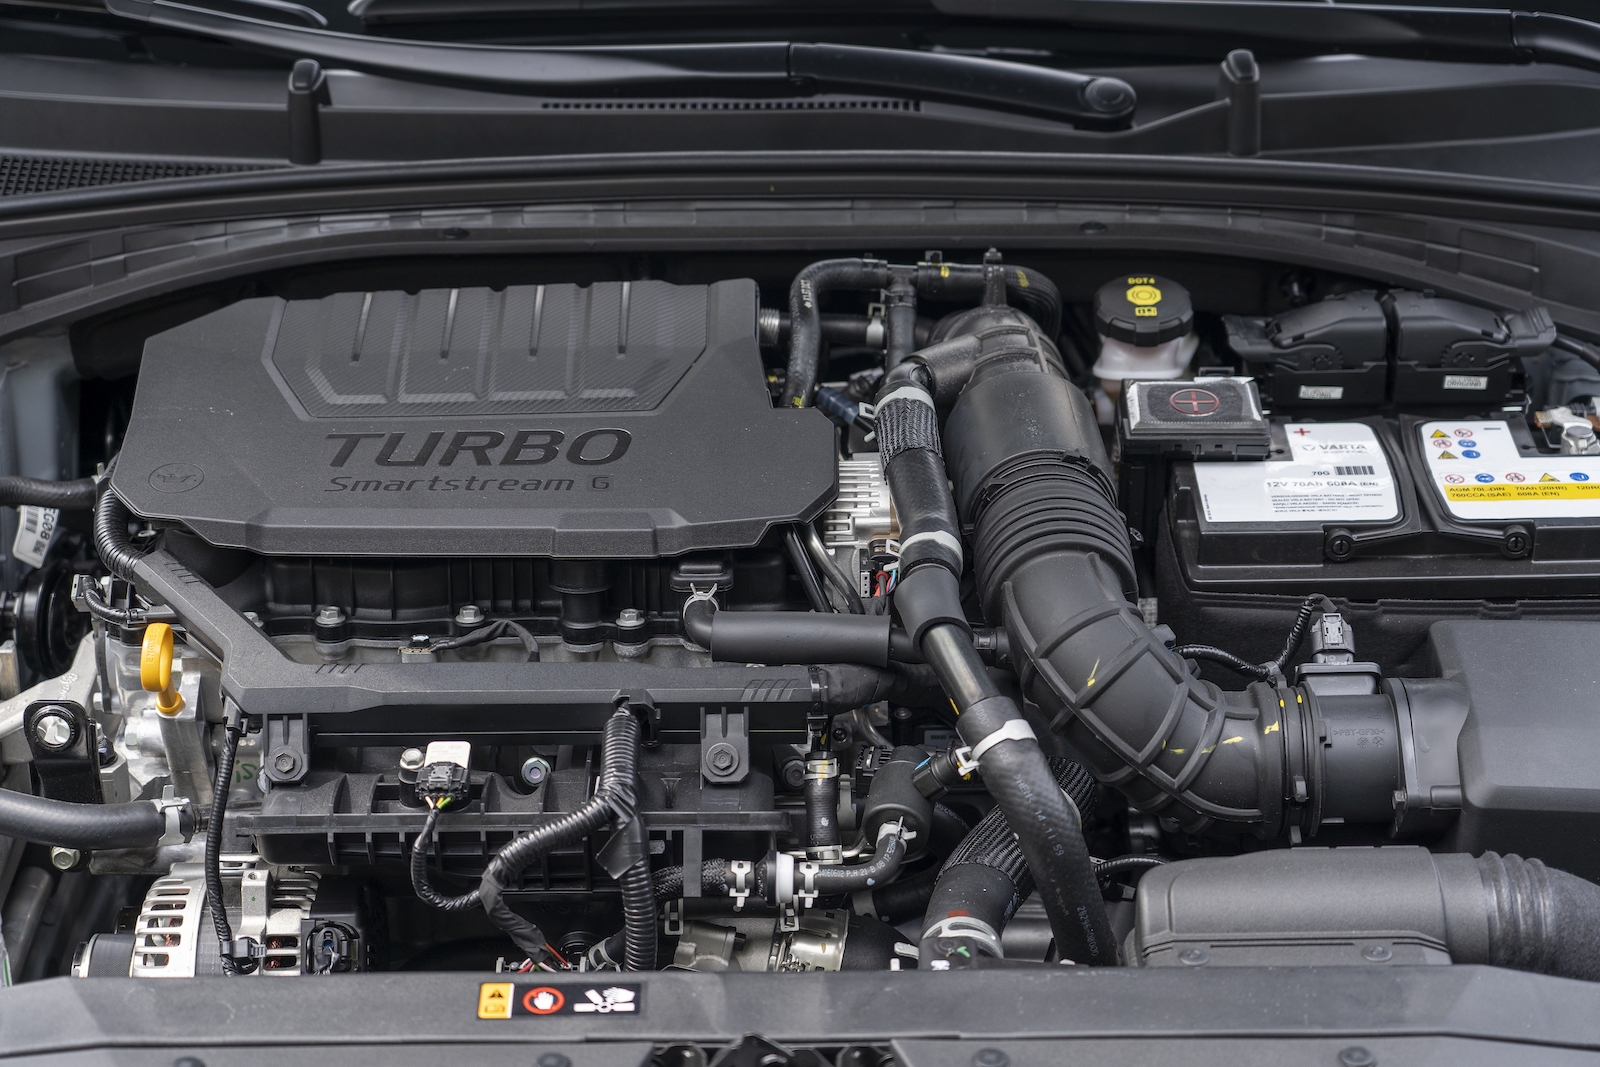 搭載 1.5L Turbo GDi 直列四缸渦輪增壓引擎，可供應 160ps / 25.8kgm 的最大出力。